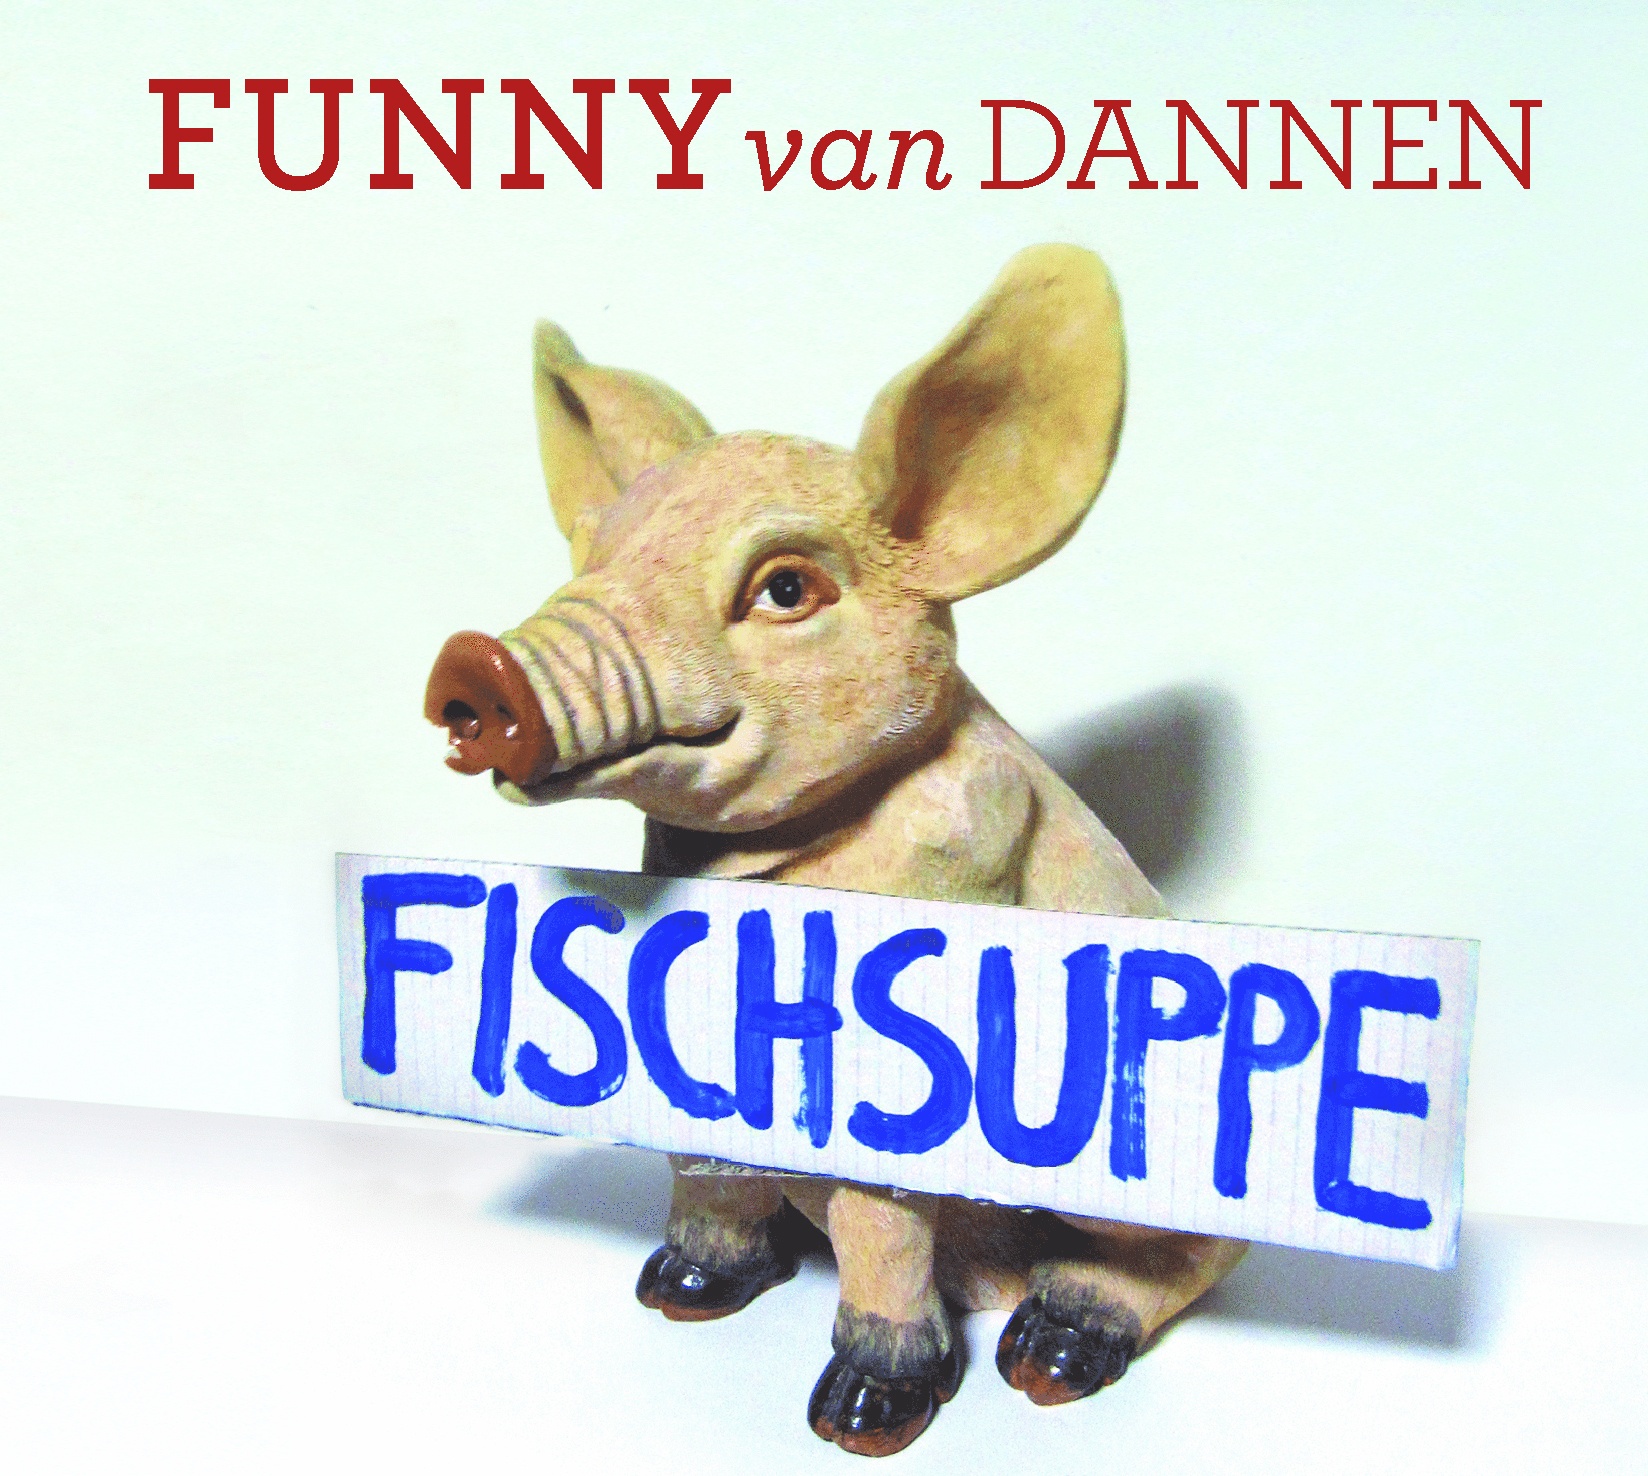 Fischsuppe - Funny van Dannen. (CD)